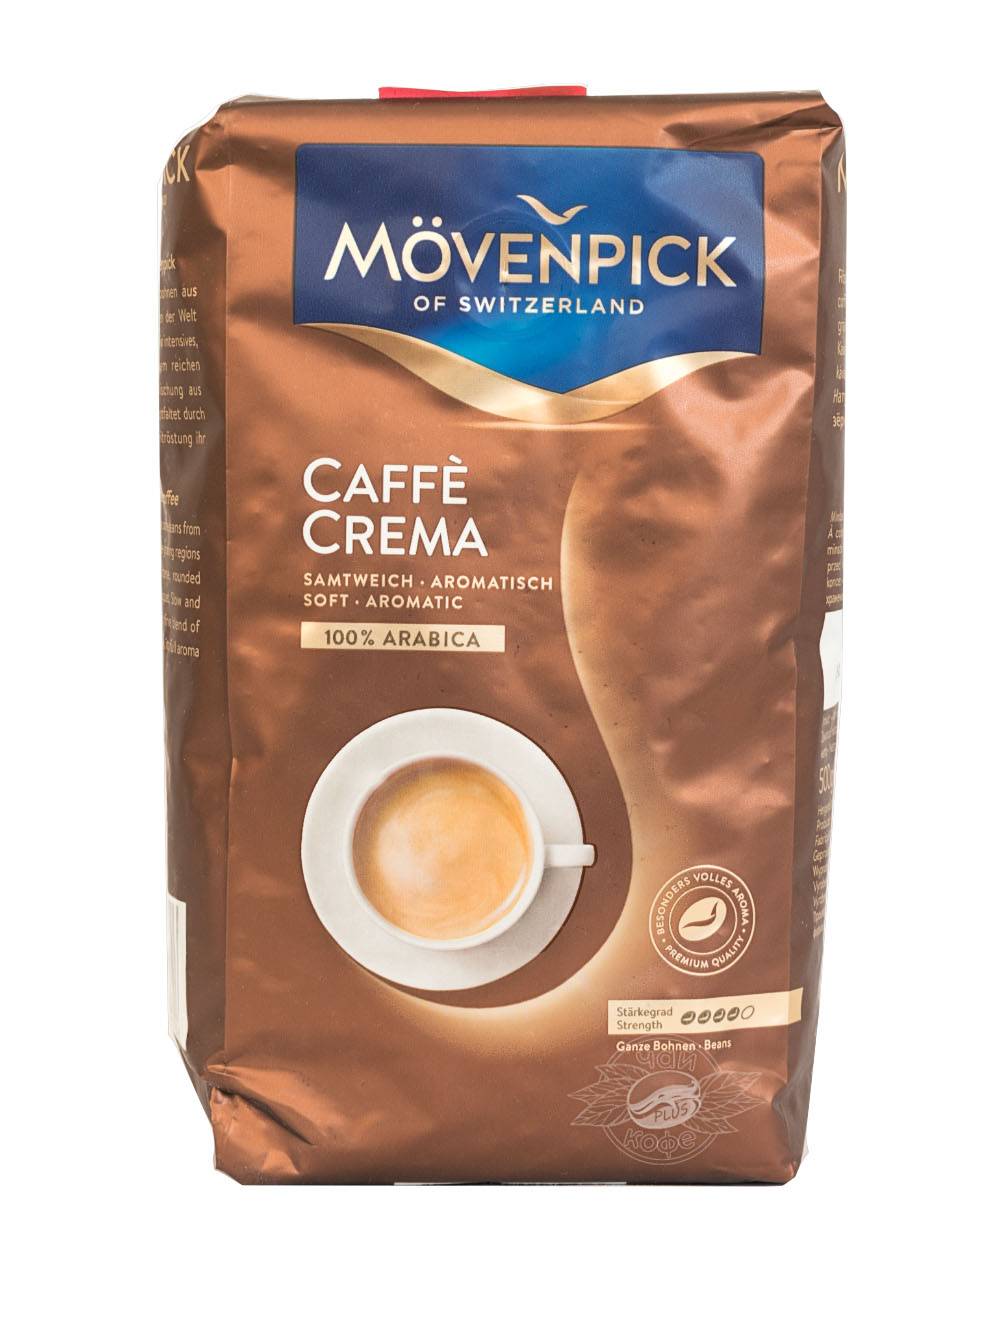 Кофе movenpick: история бренда, производство, ассортимент сортов, интересные факты